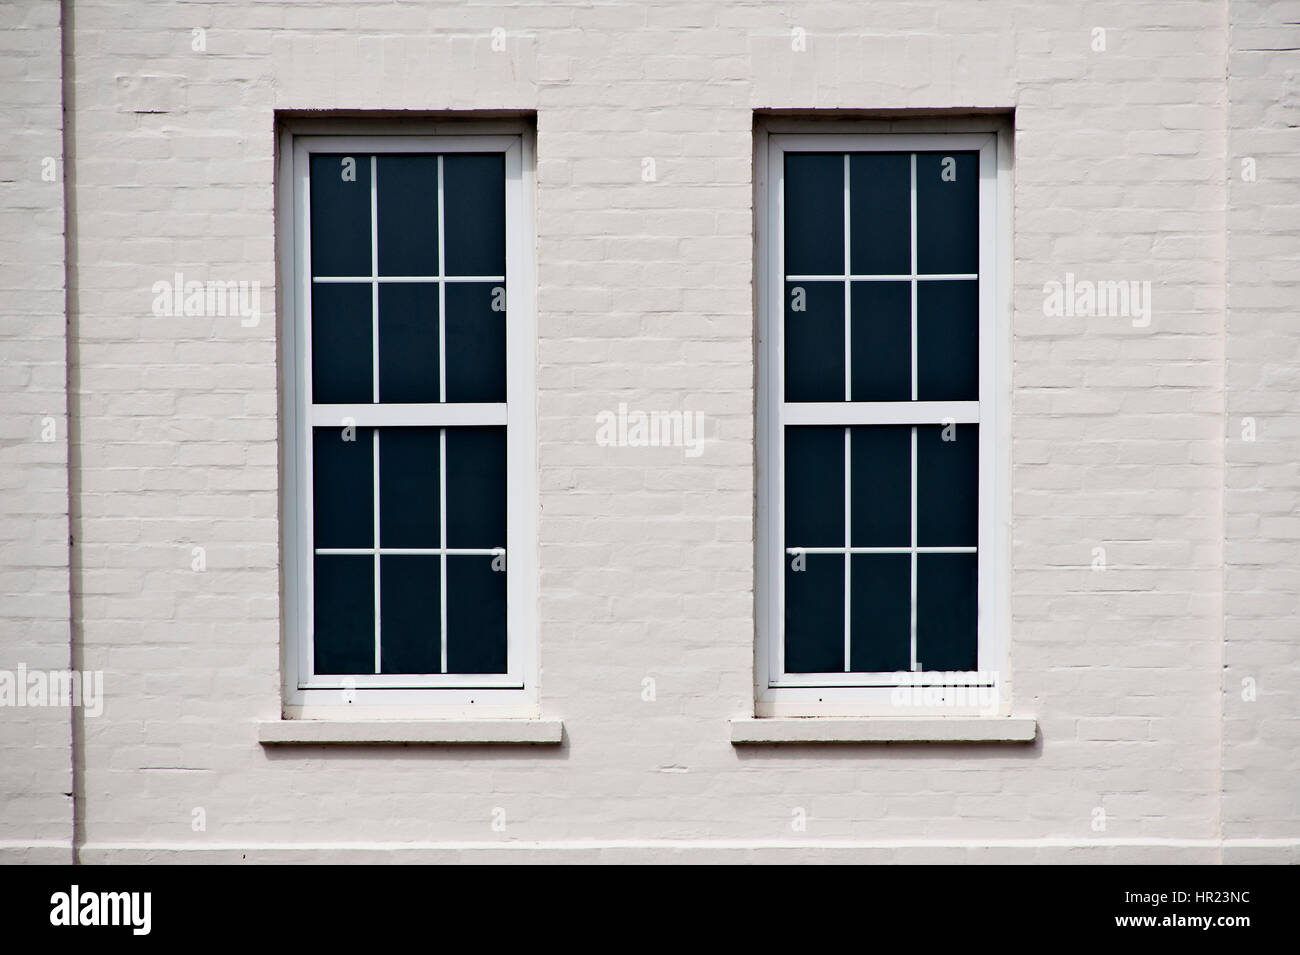 Deux grandes fenêtres à guillotine dans un mur peint en blanc d'un bâtiment historique Banque D'Images